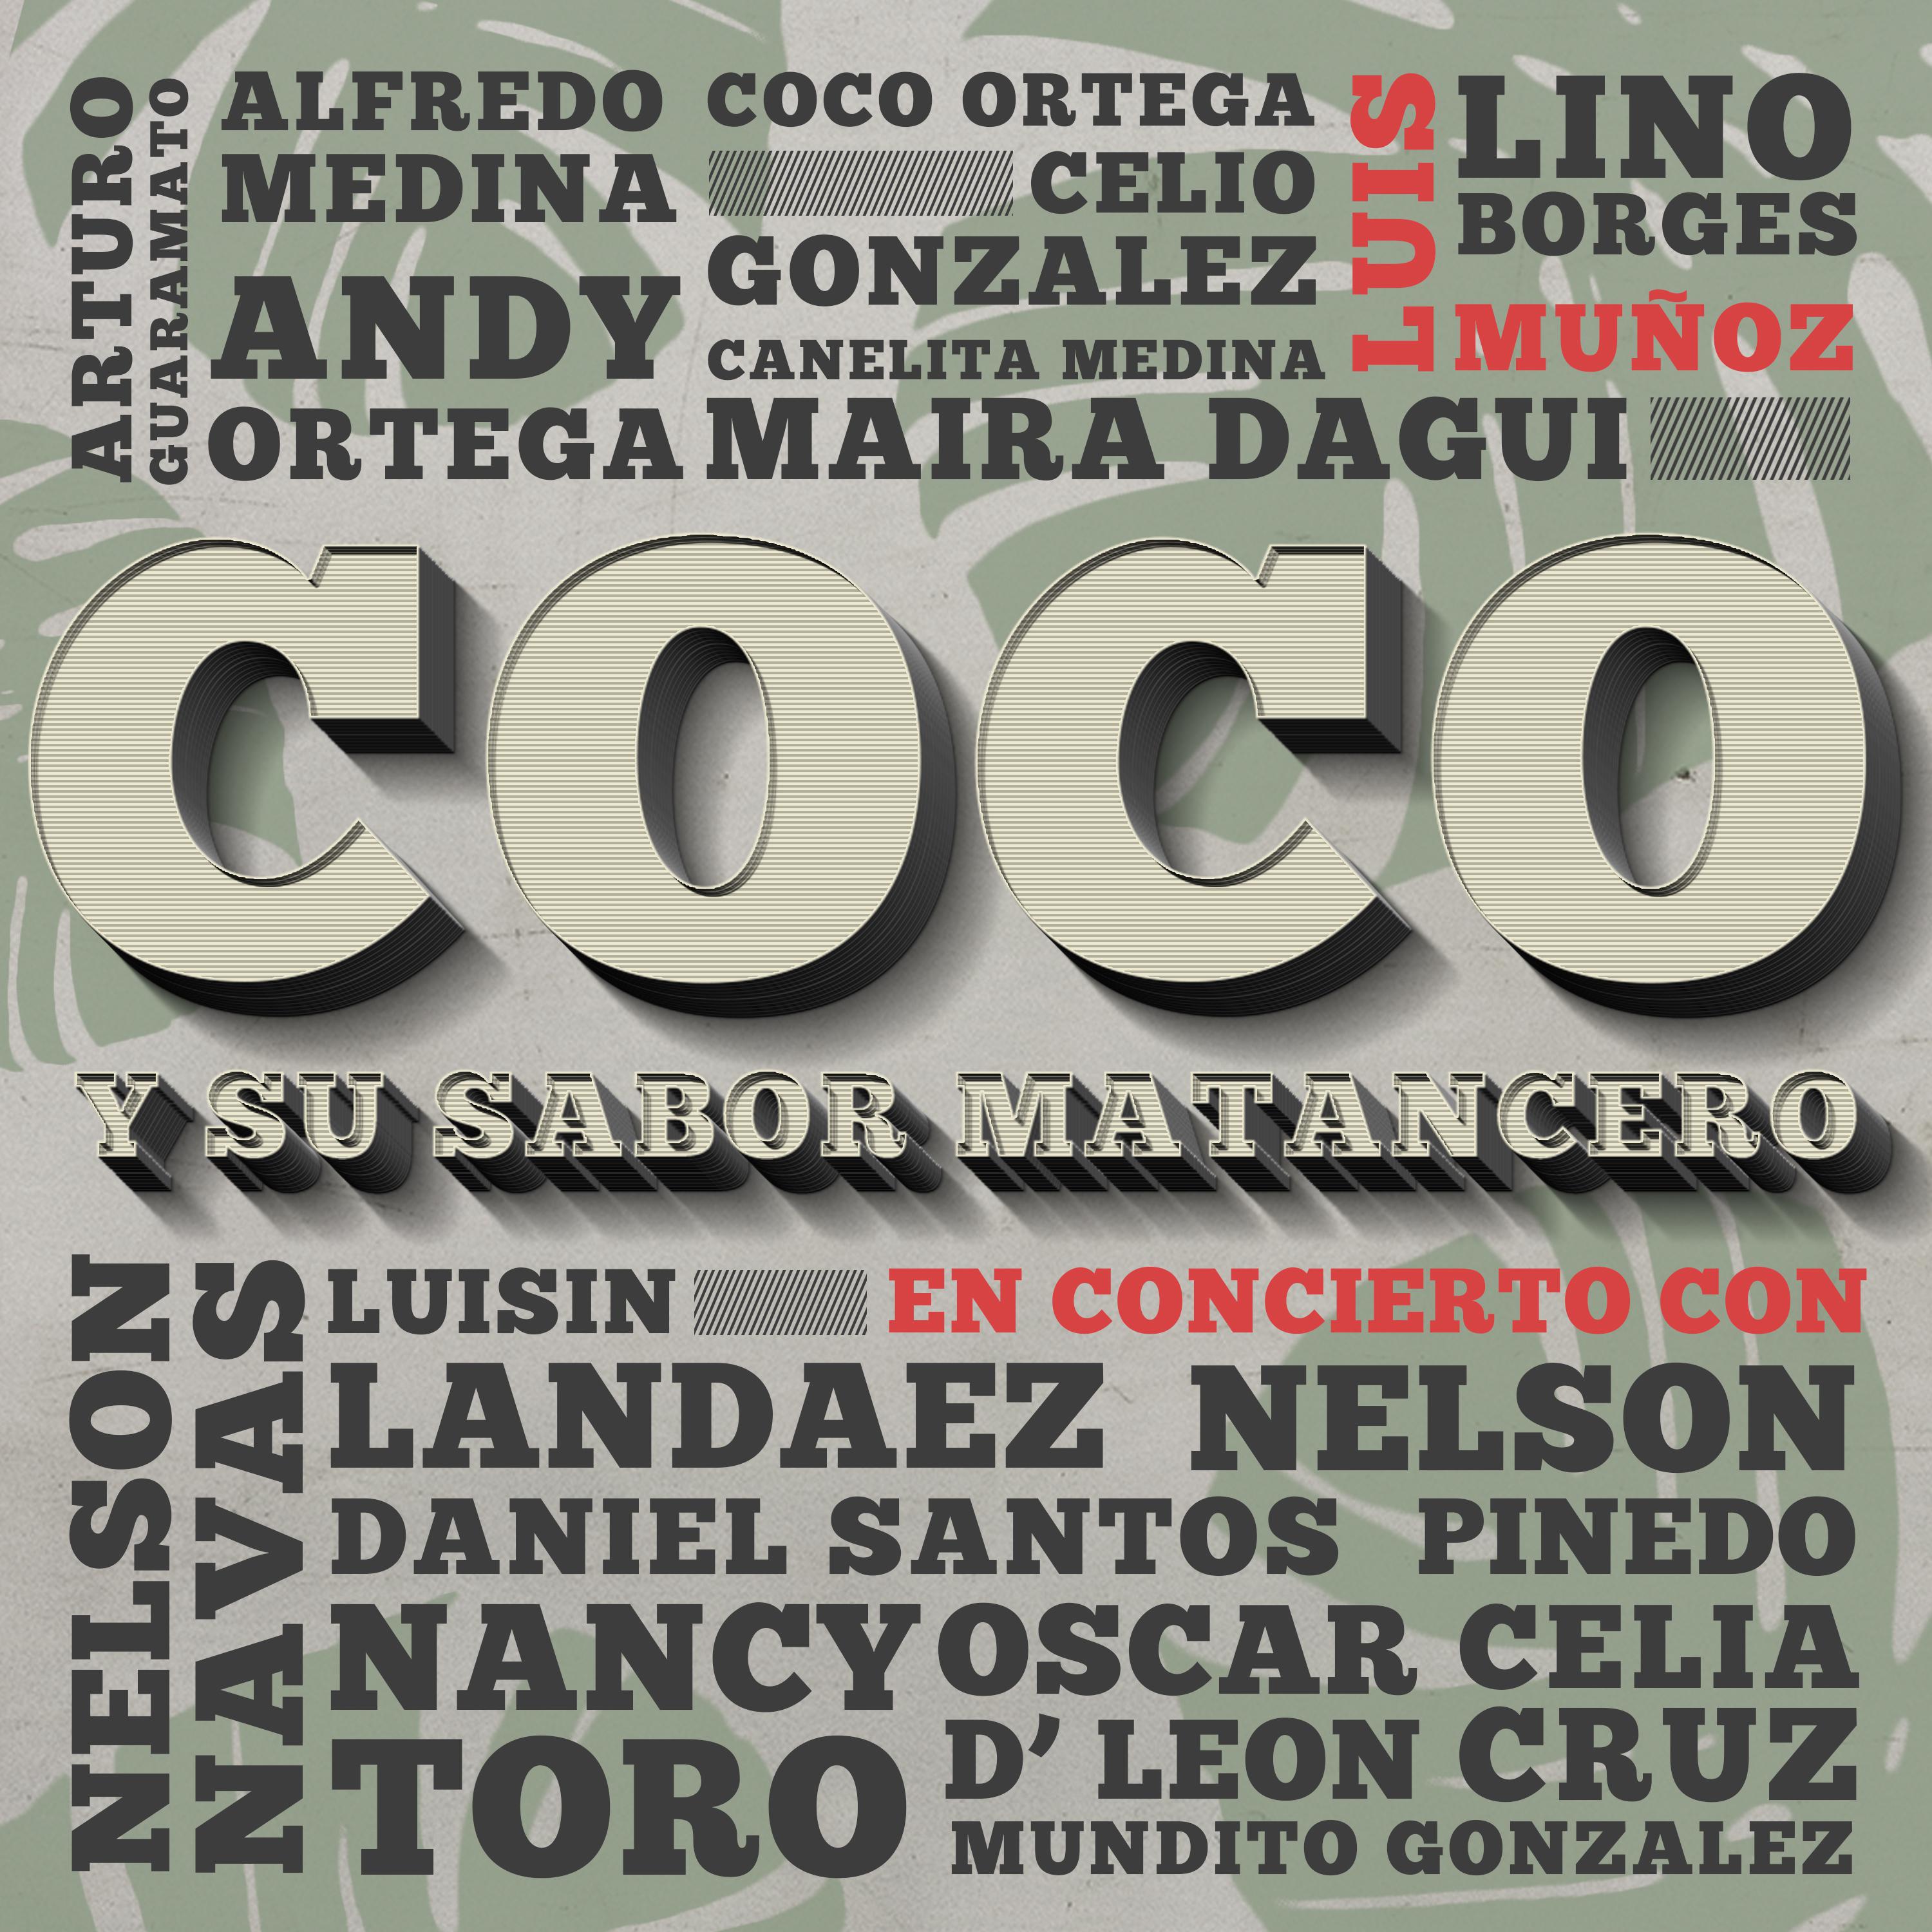 Coco y Su Sabor Matancero en Concierto con Luis Munoz